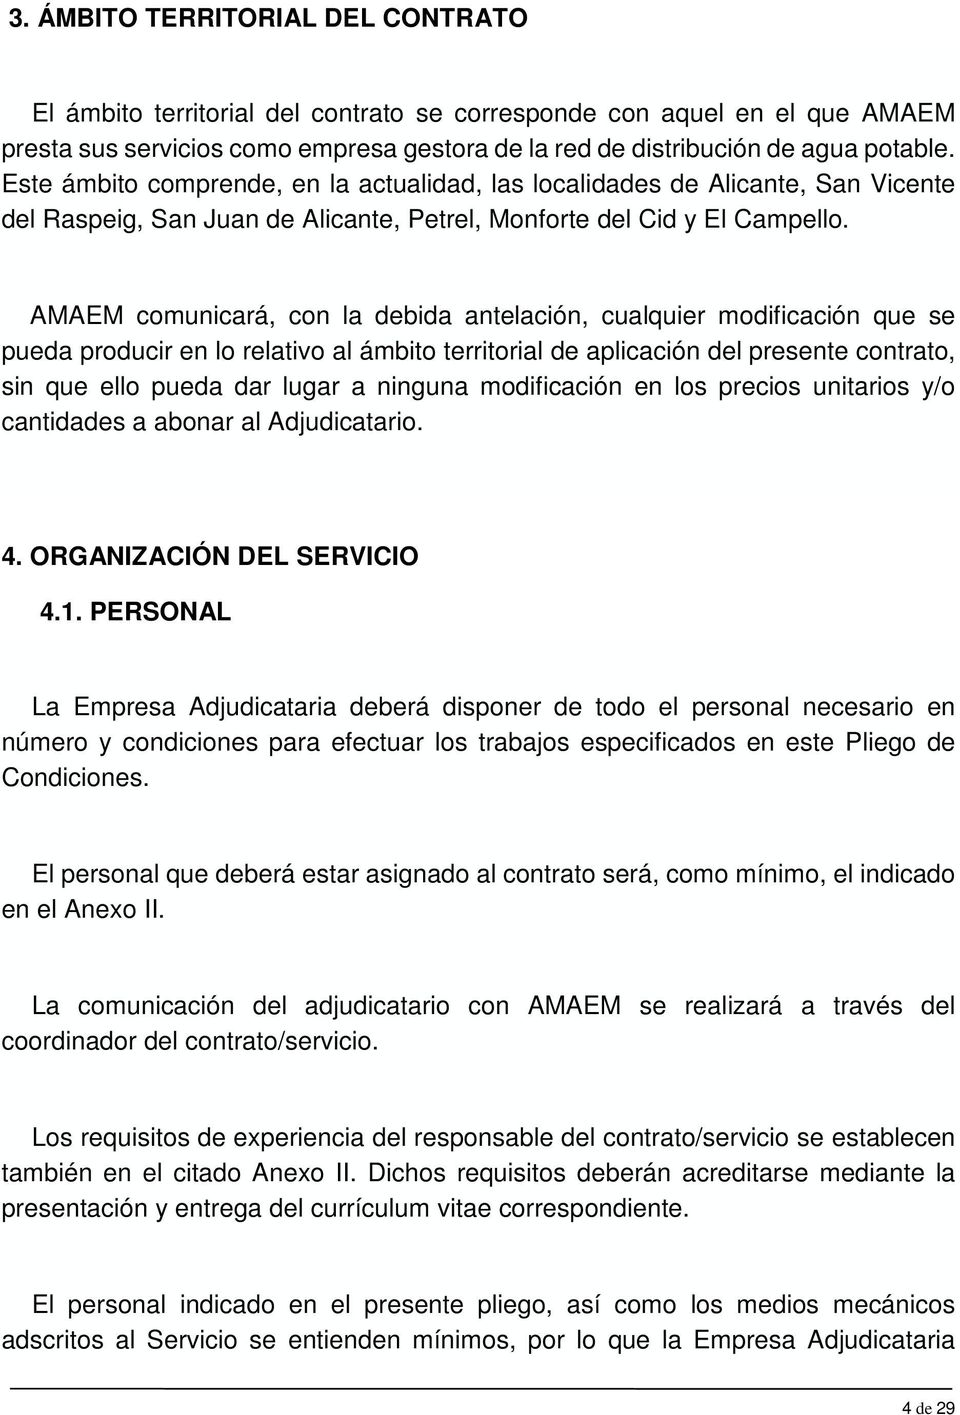 AMAEM comunicará, con la debida antelación, cualquier modificación que se pueda producir en lo relativo al ámbito territorial de aplicación del presente contrato, sin que ello pueda dar lugar a